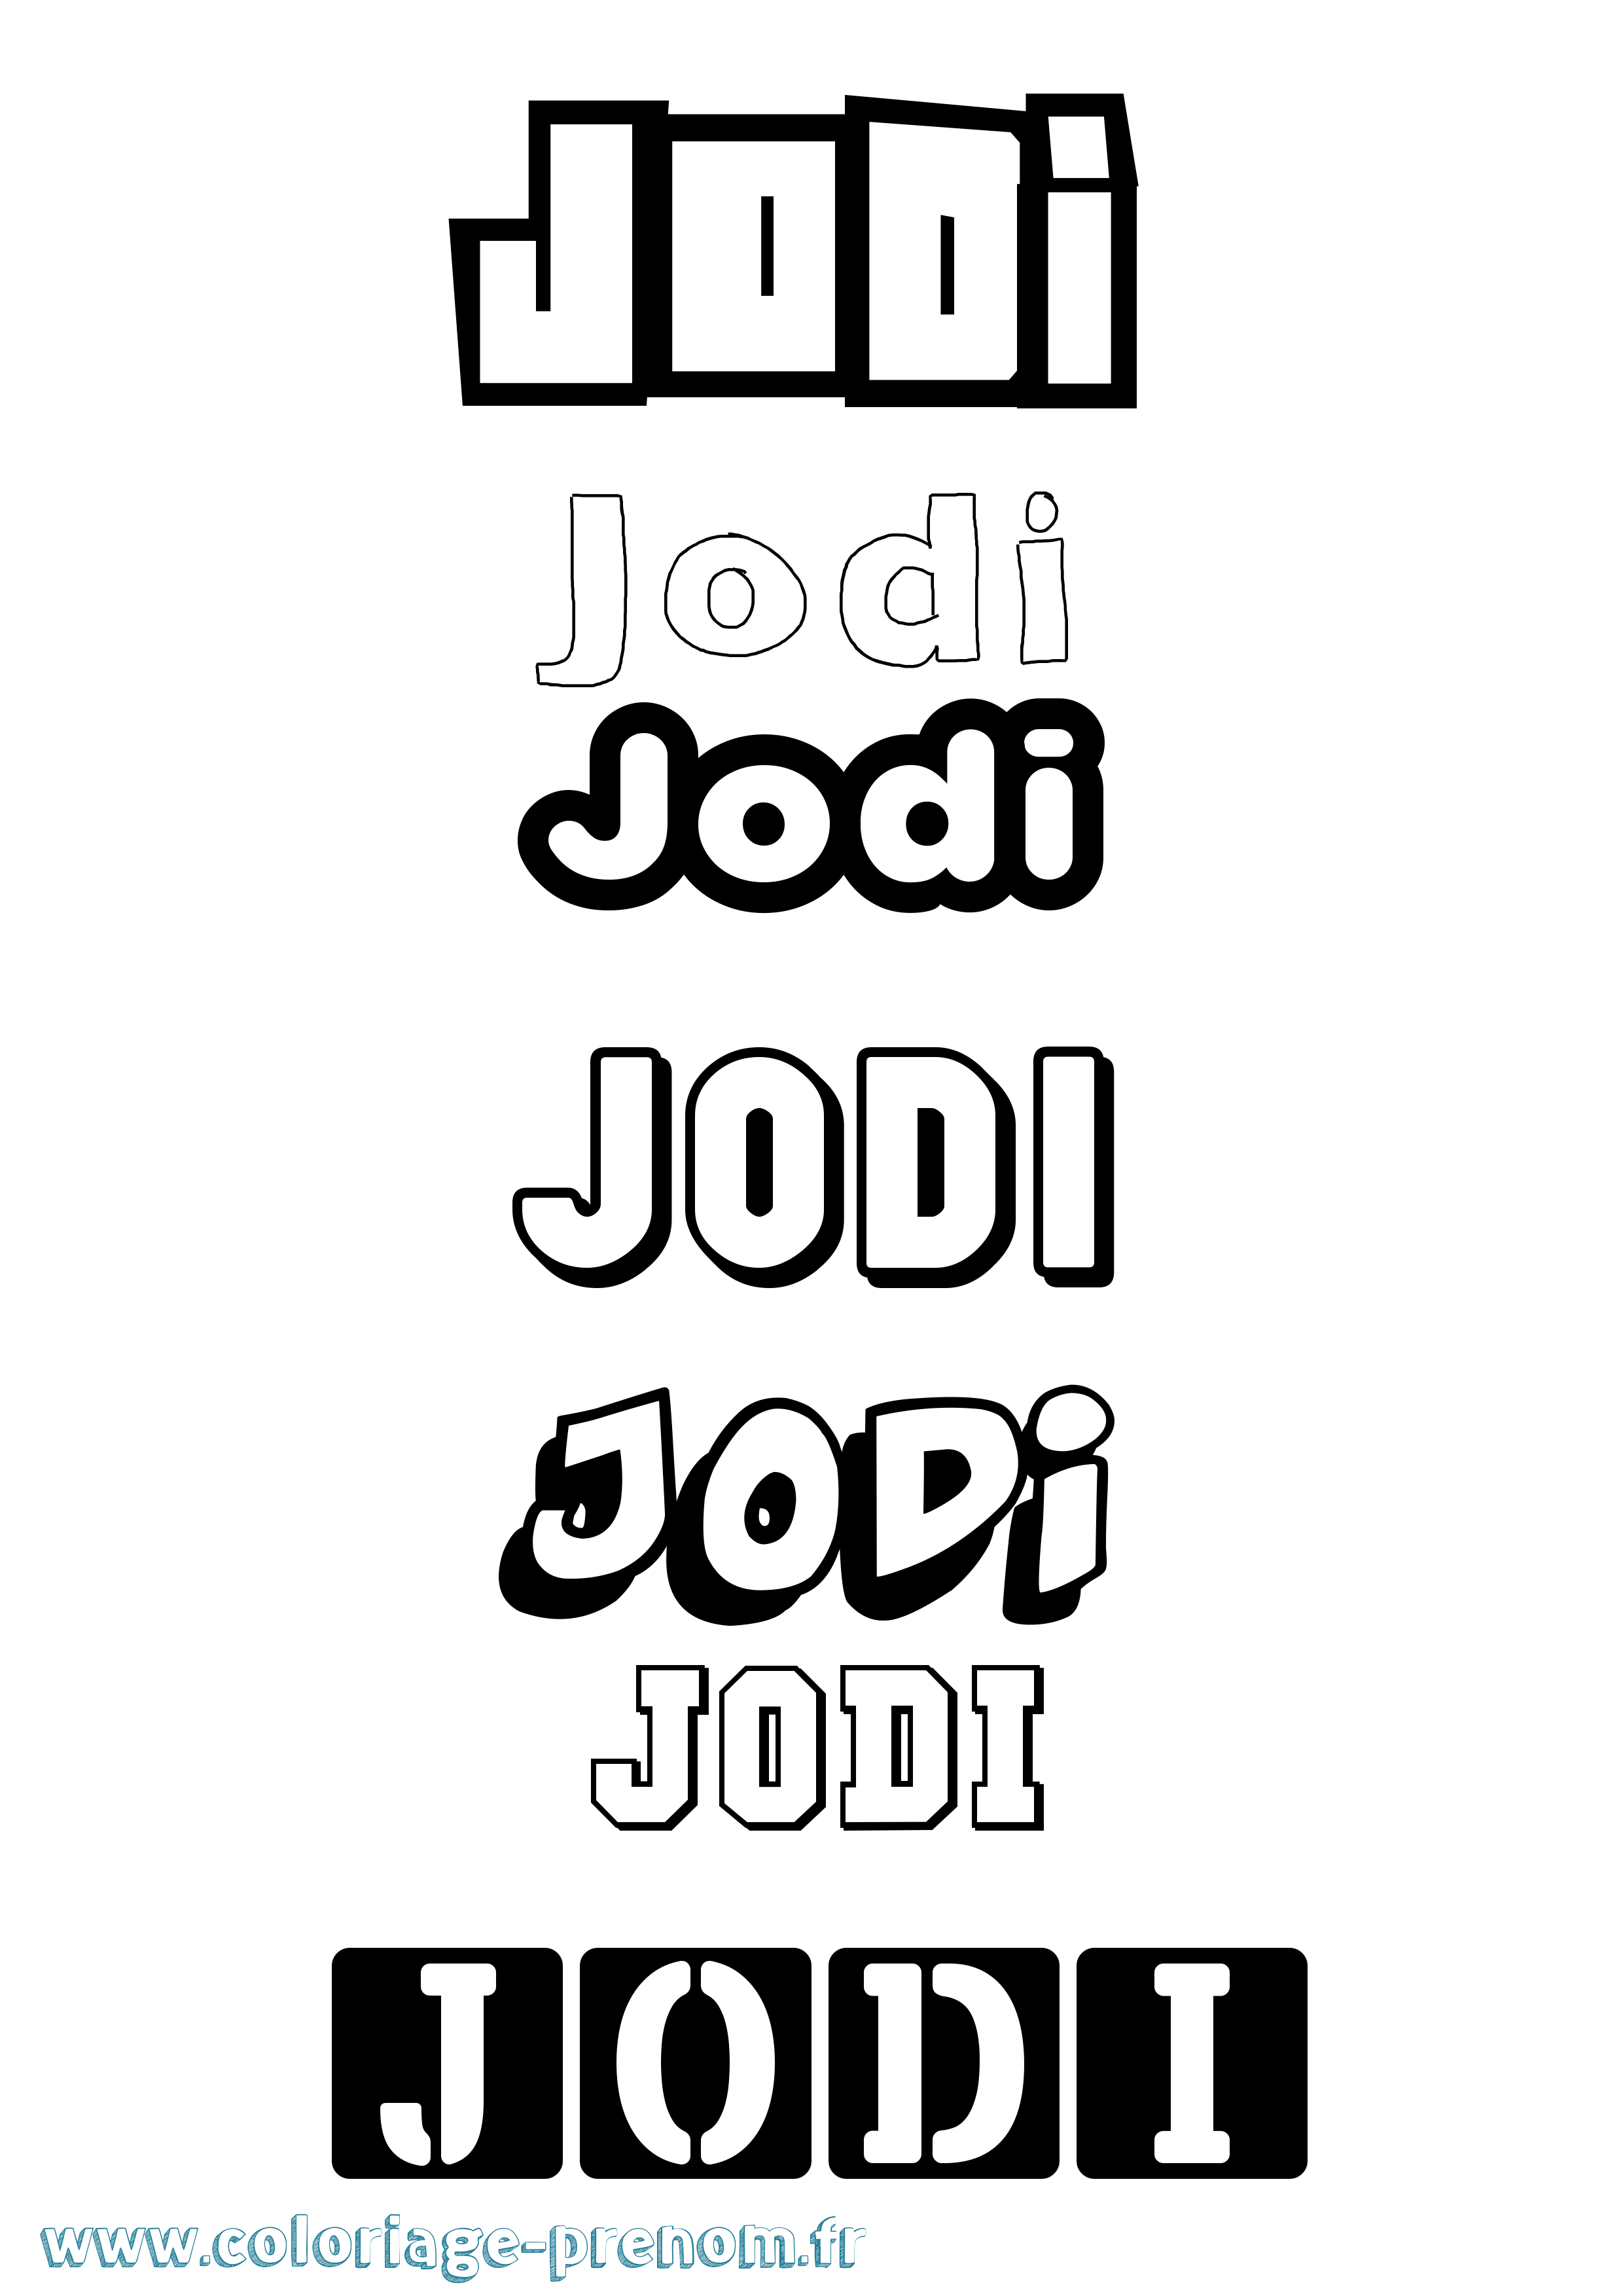 Coloriage prénom Jodi Simple